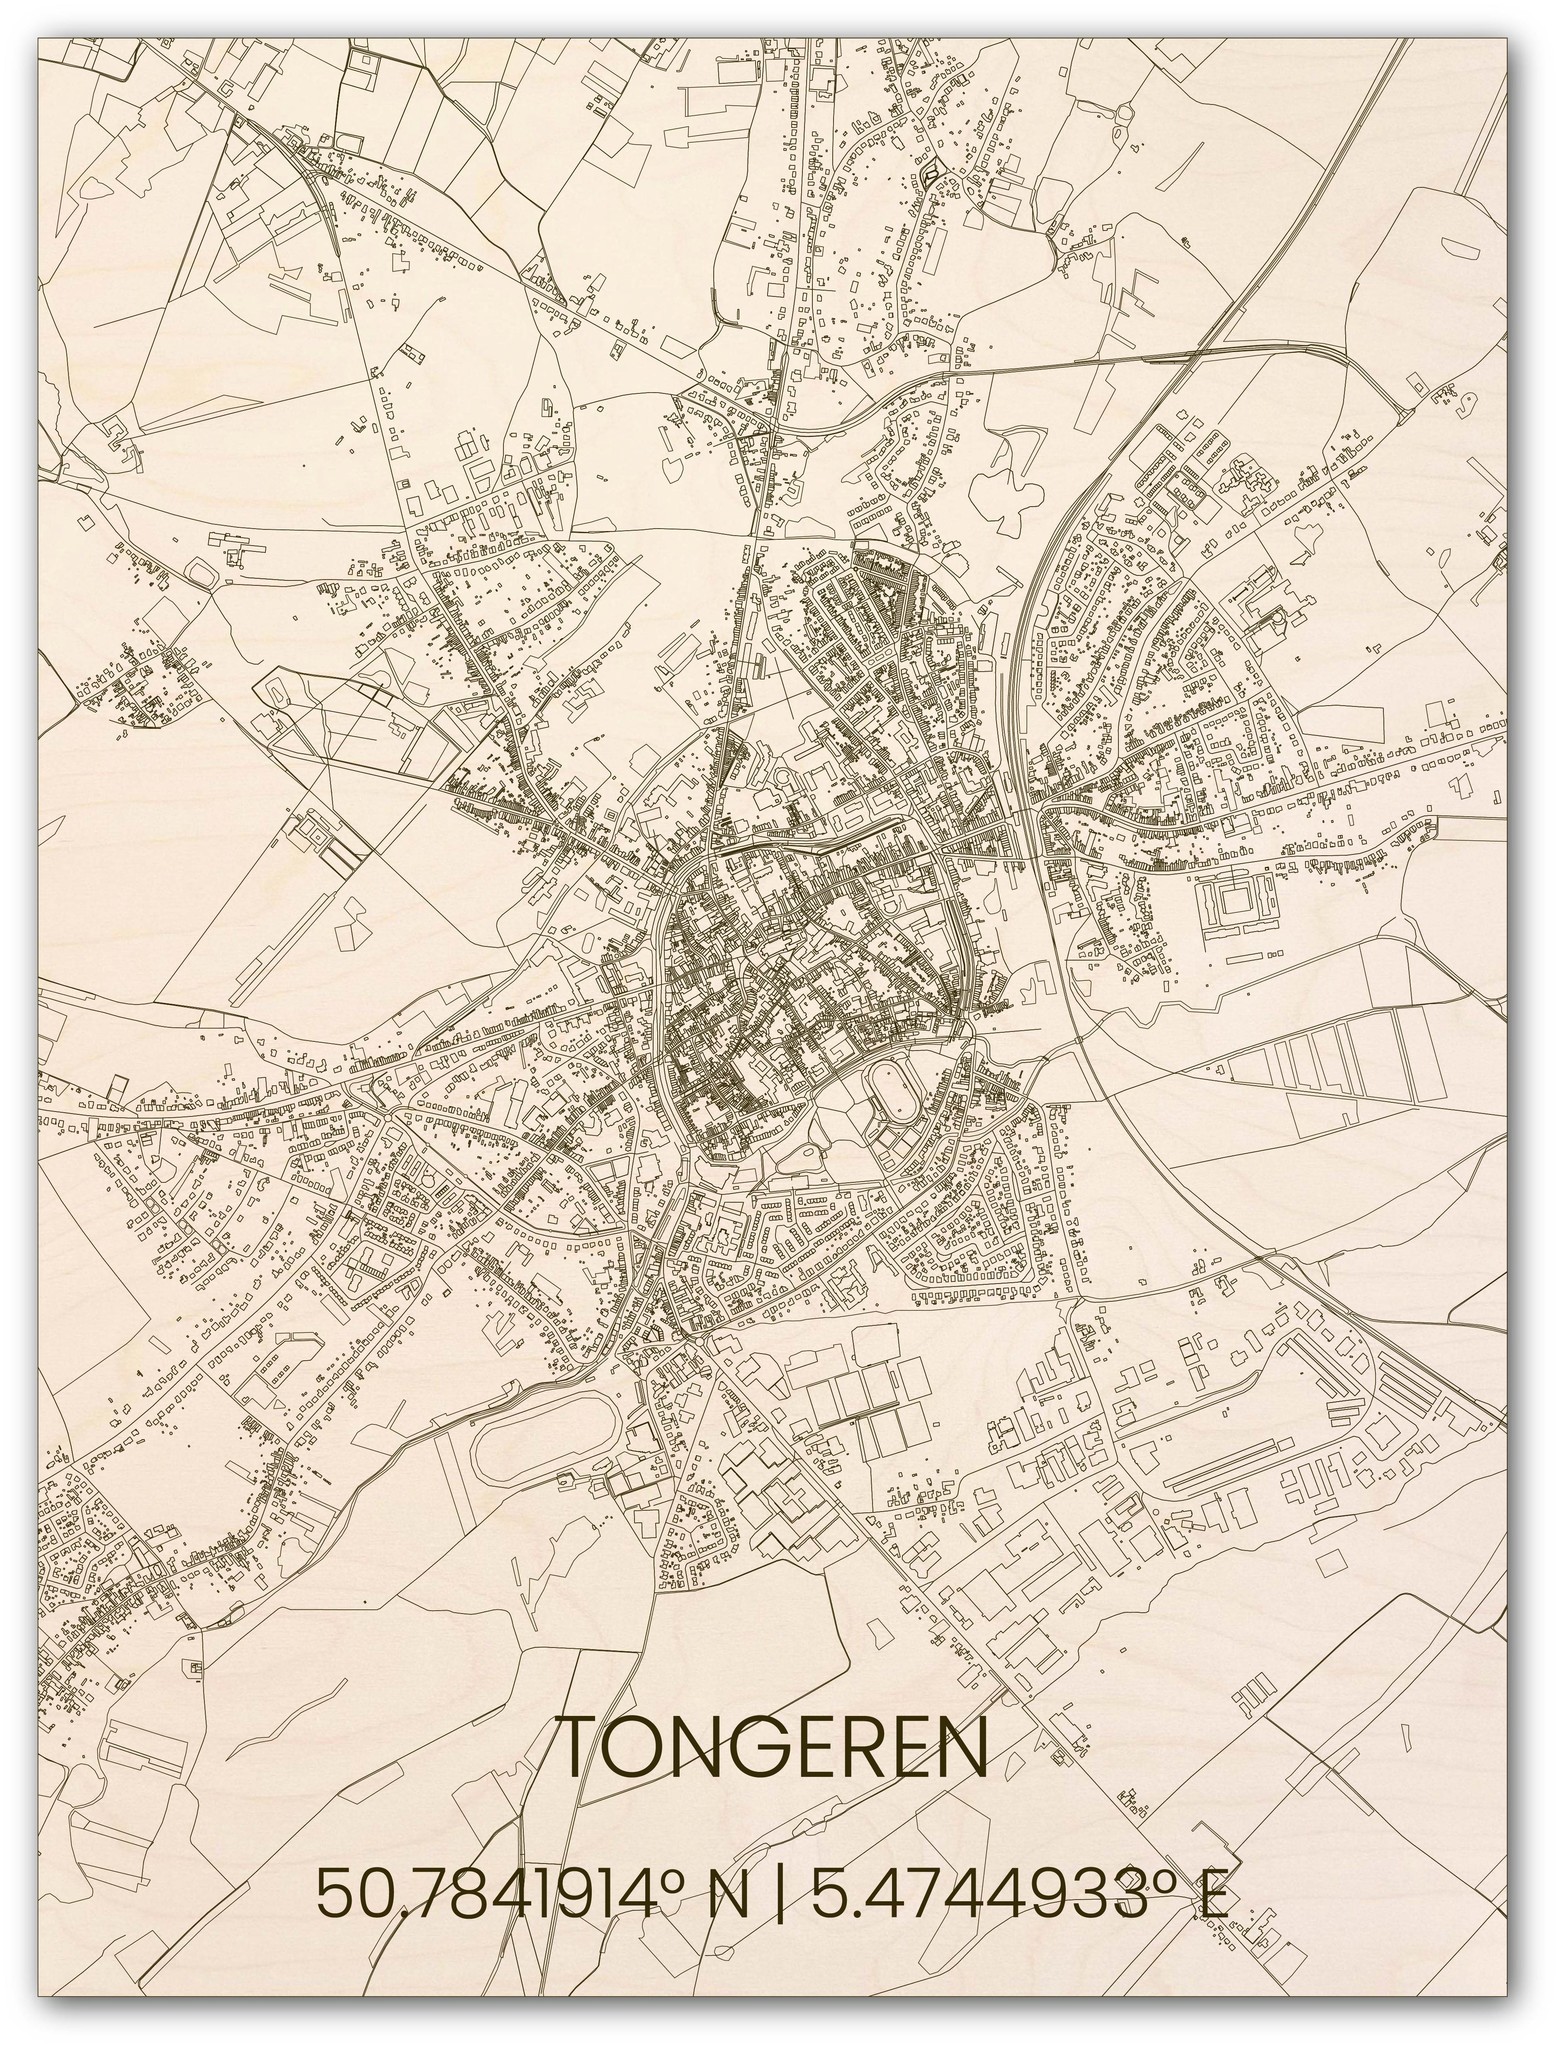 Houten stadsplattegrond Tongeren-1